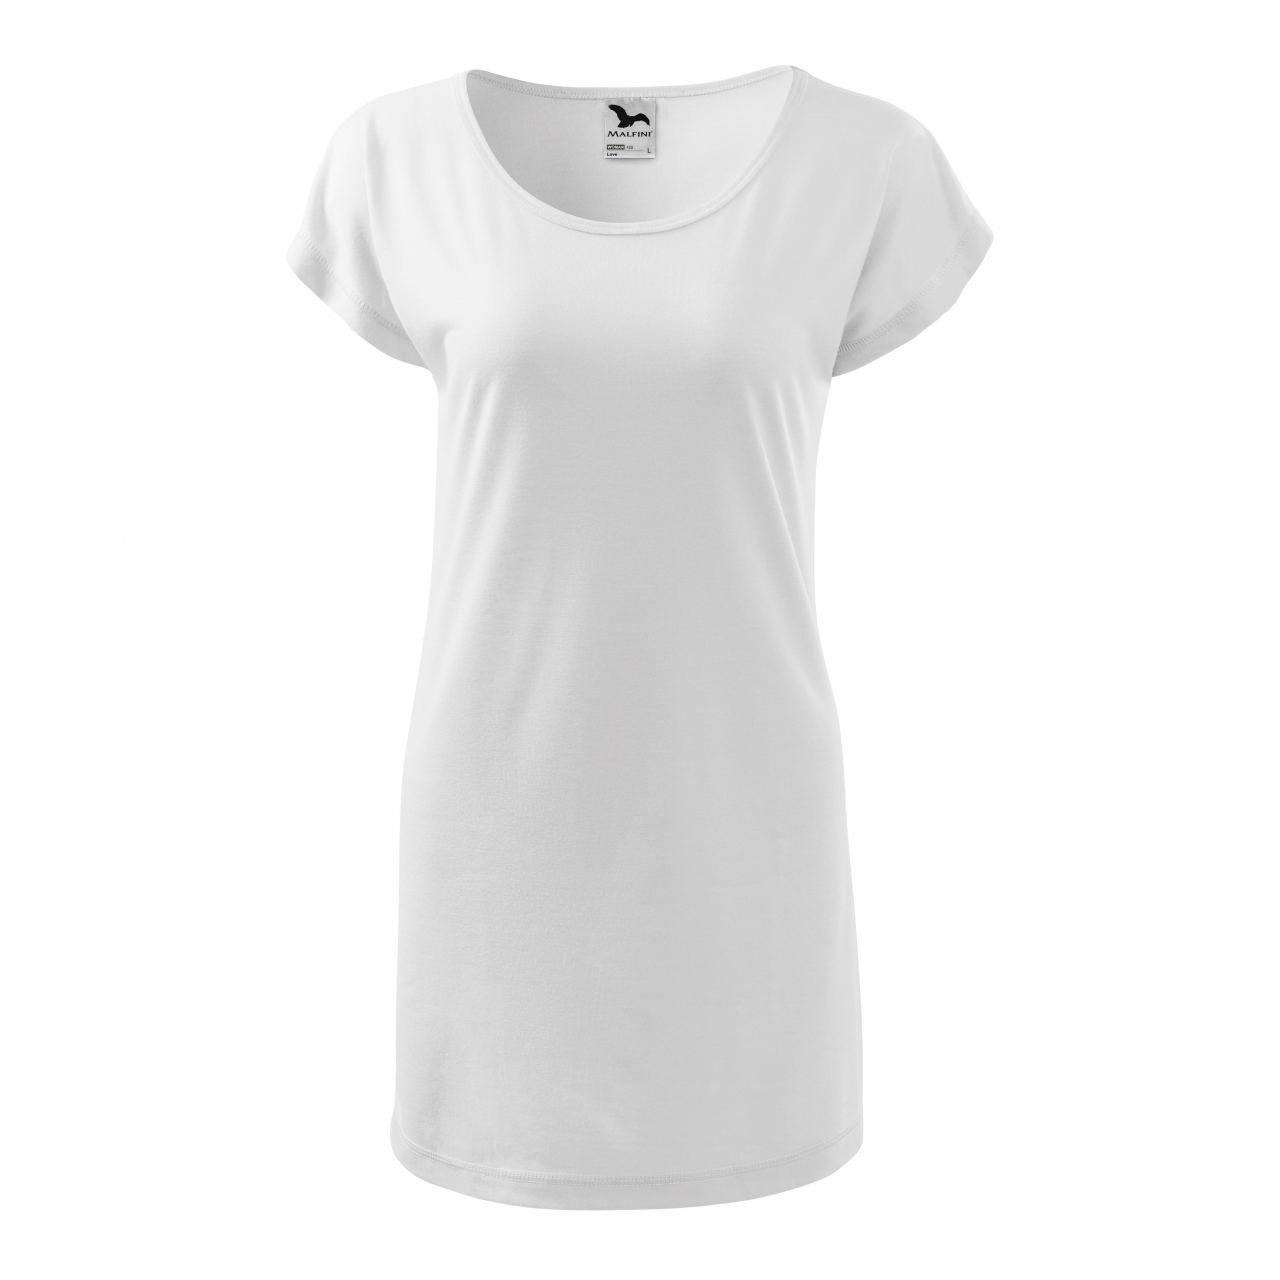 Šaty Malfini Love - bílé, XL